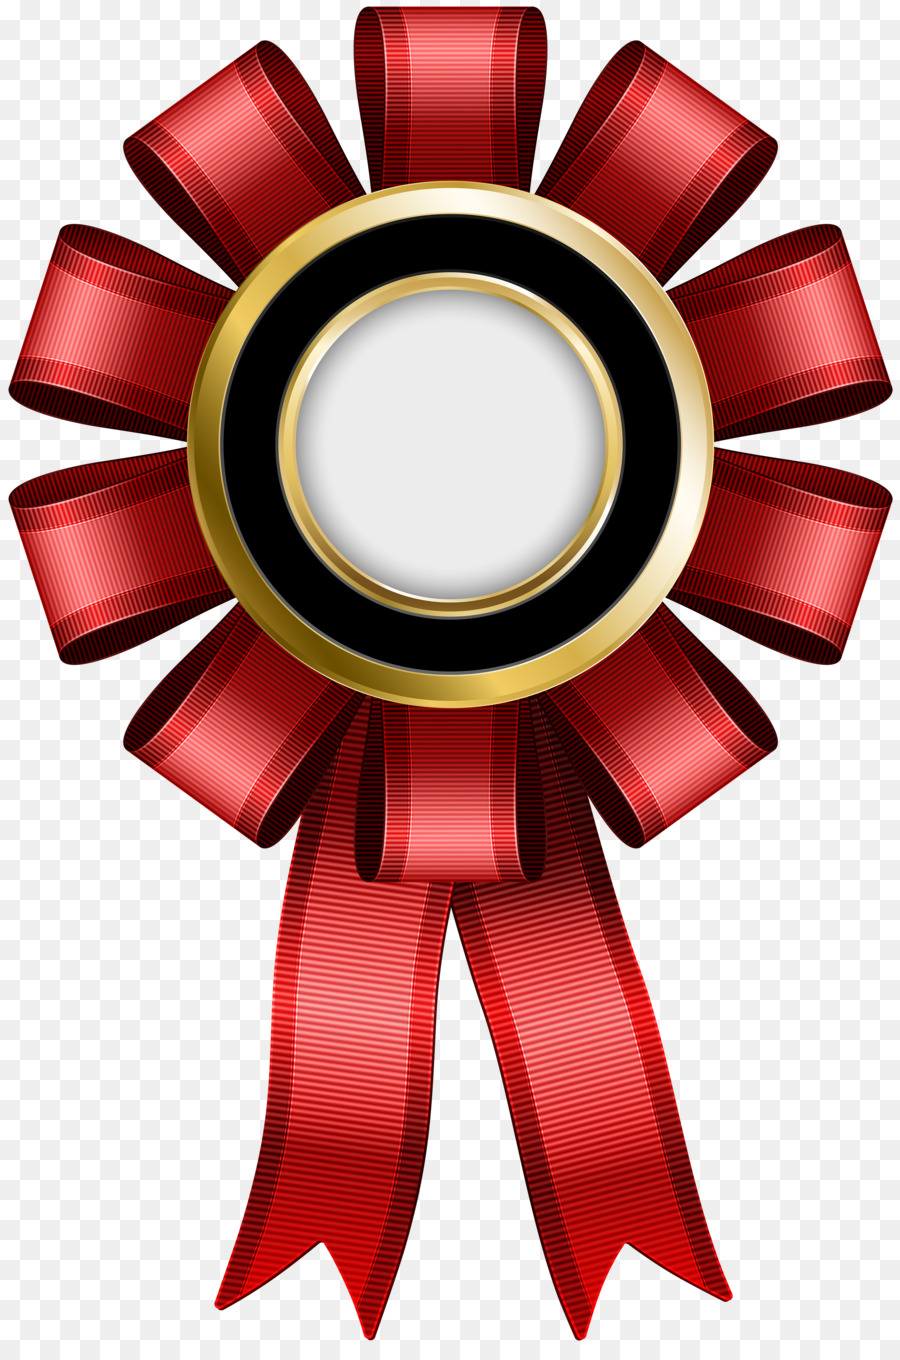 Award Ribbon-Medaille-Preis-Abzeichen - Award